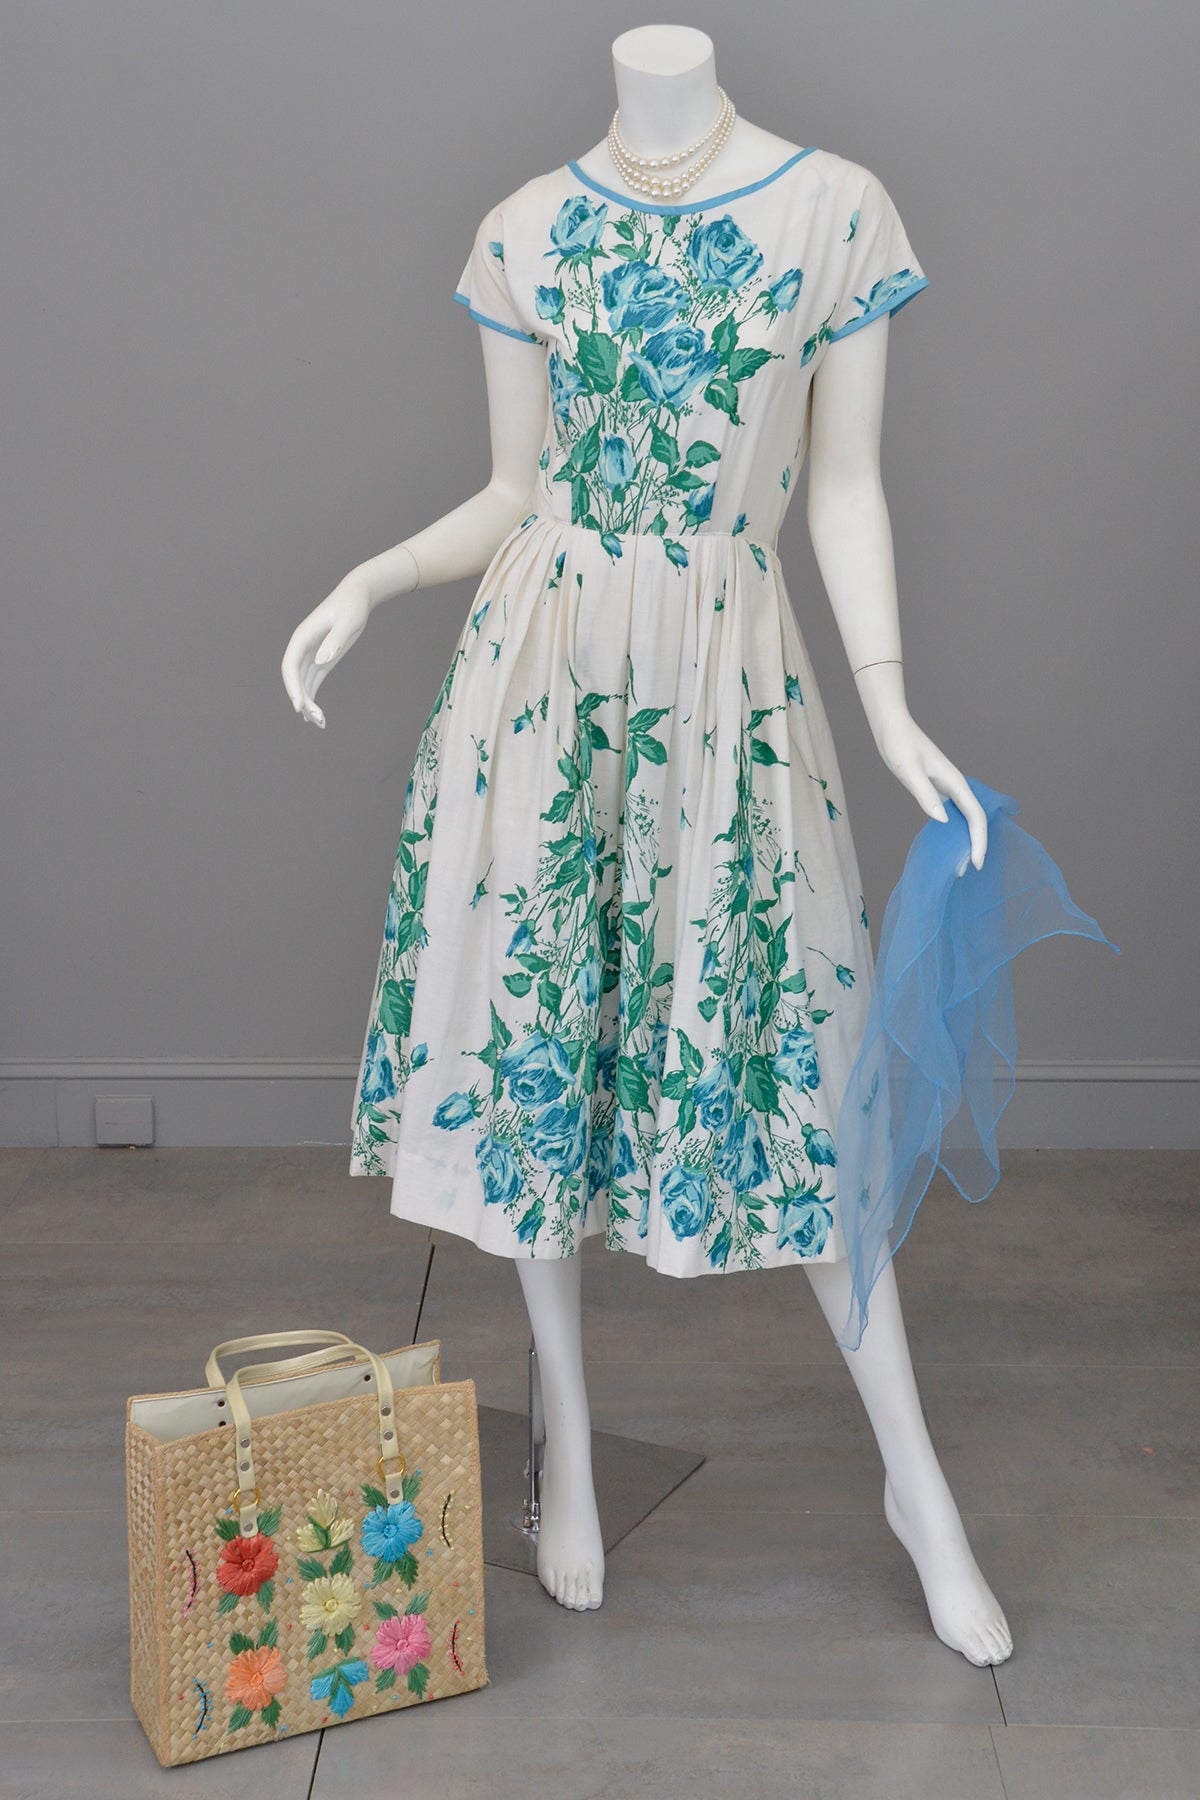 1950s Novelty Print Blue Roses on White 50s Dress